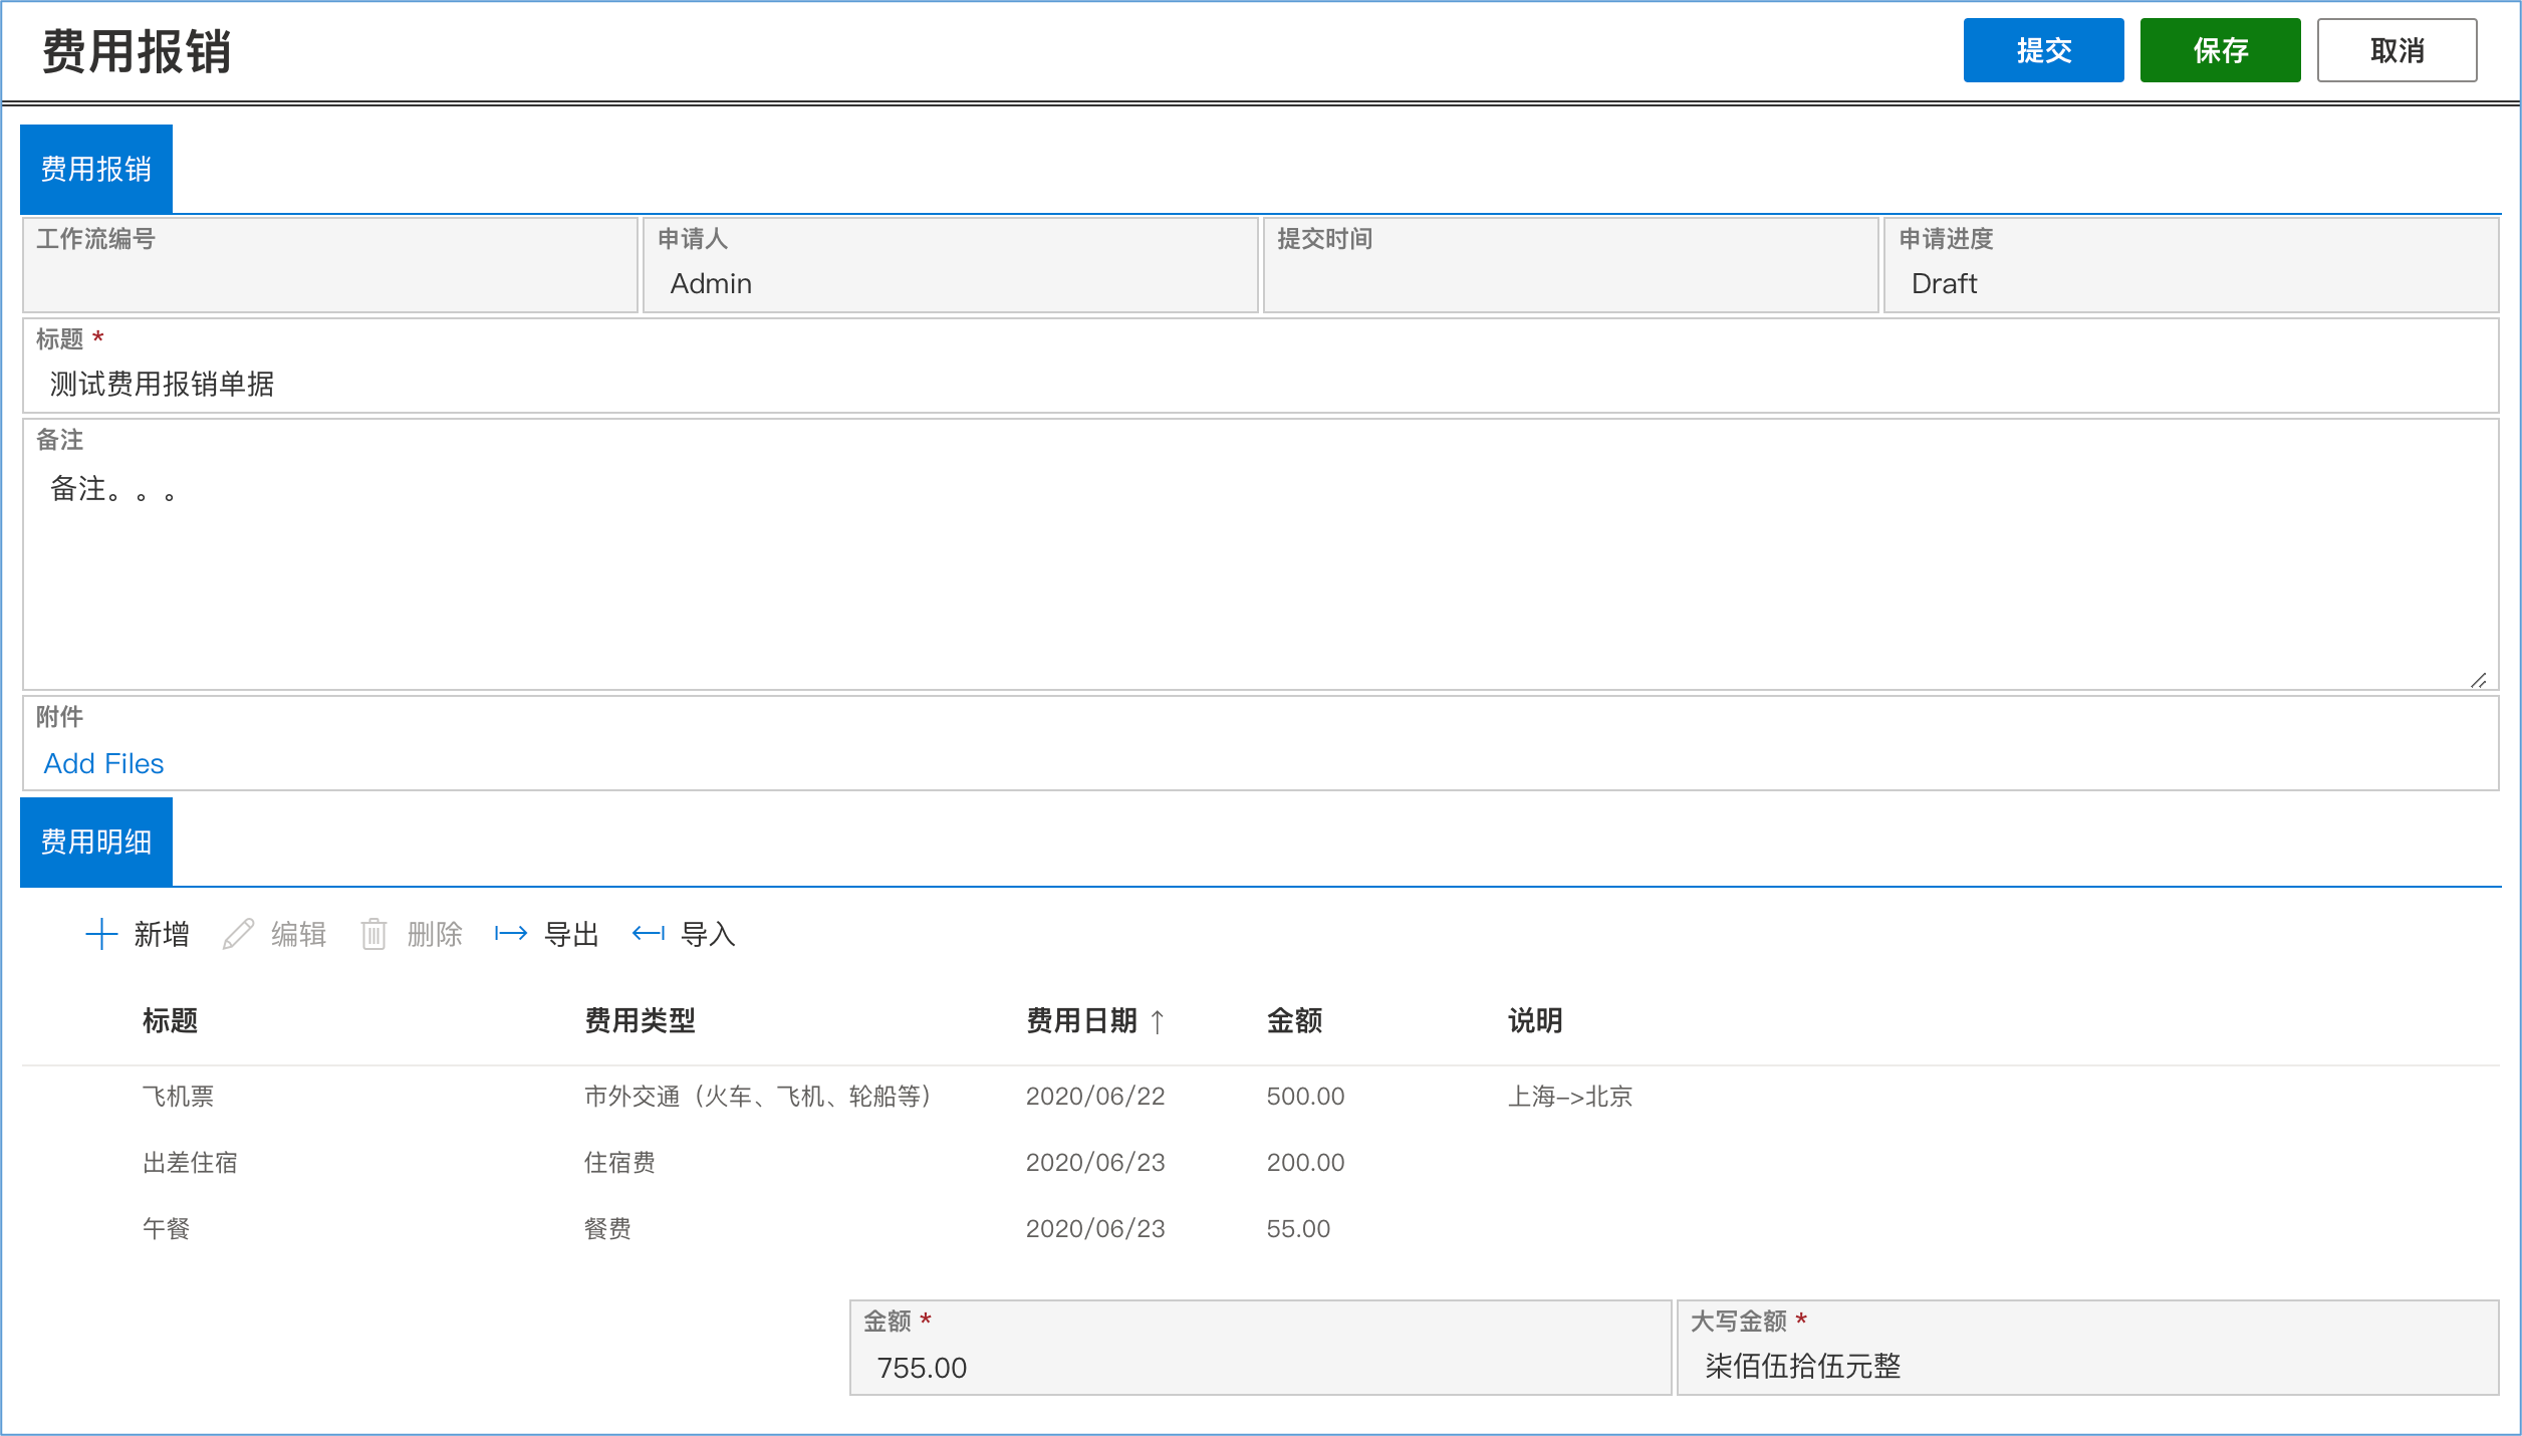 上海水杉网络科技有限公司 Aportal For Office 365